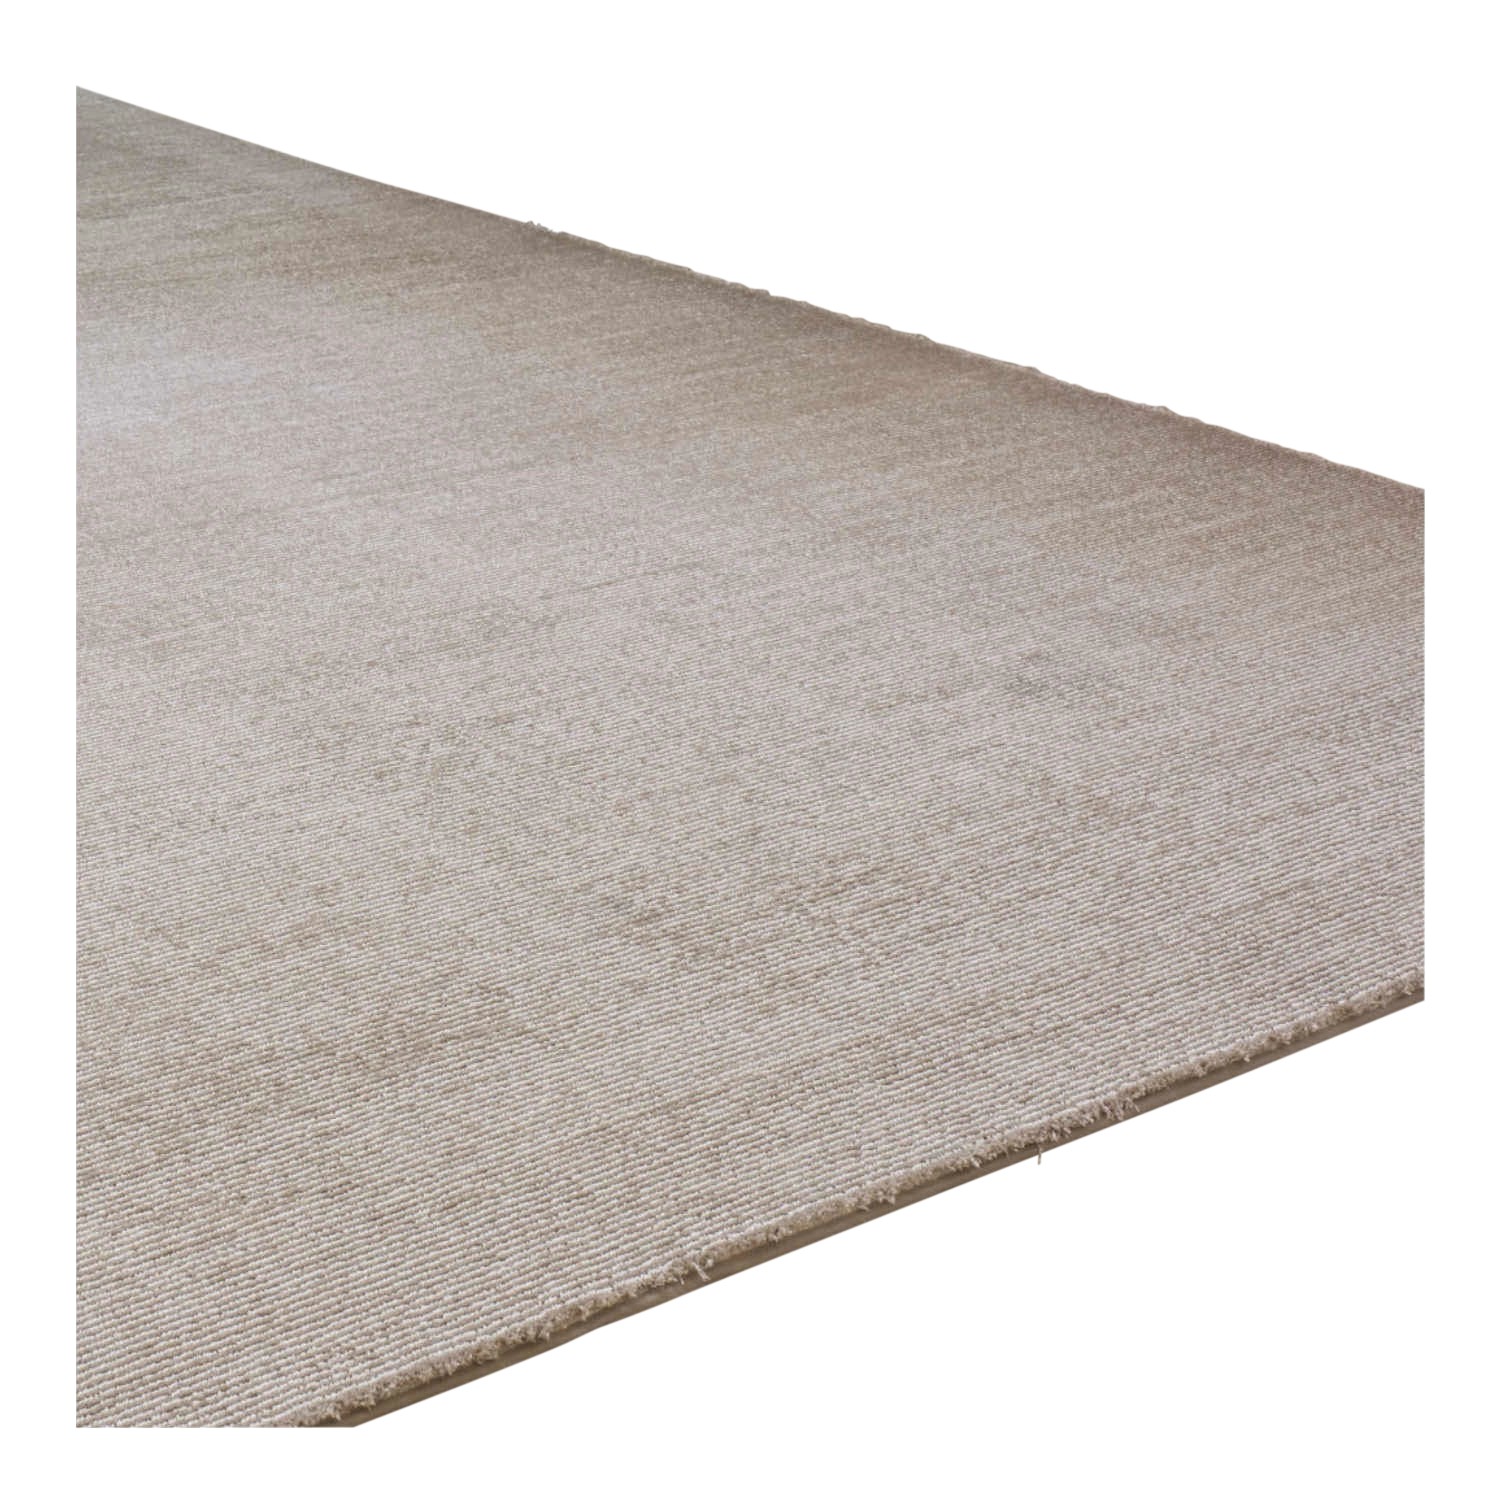 Blitz Teppich, Farbe 3820 light grey, Grösse 200 x 300cm von B.I.C Carpets